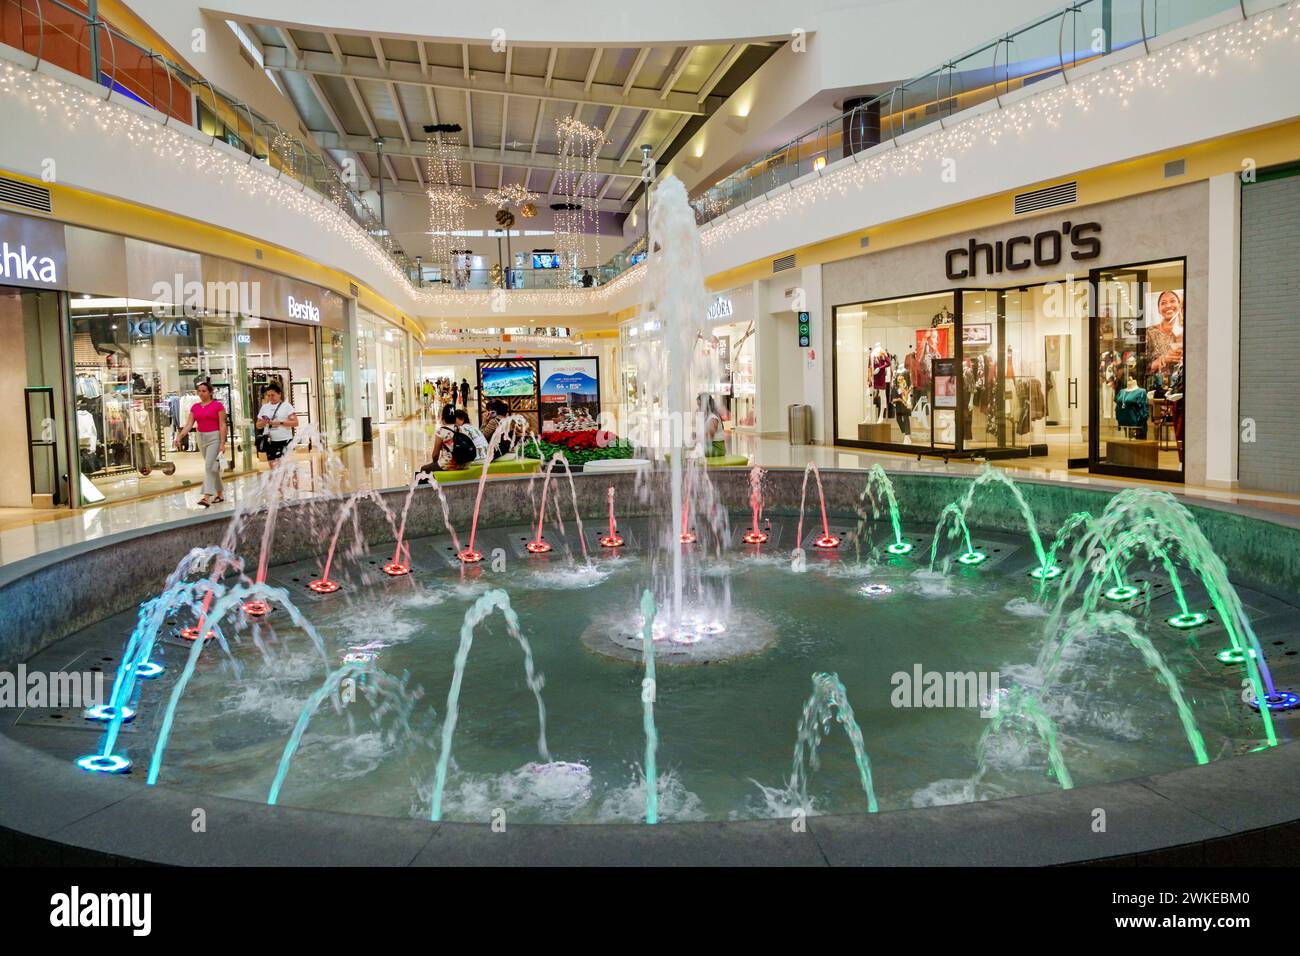 Merida Mexico, Zona Industrial, Galerias Merida Einkaufszentrum Atrium, innen innen, Wasserbrunnen farbige Lichter, Chicos Damenbekleidungsgeschäfte Stockfoto